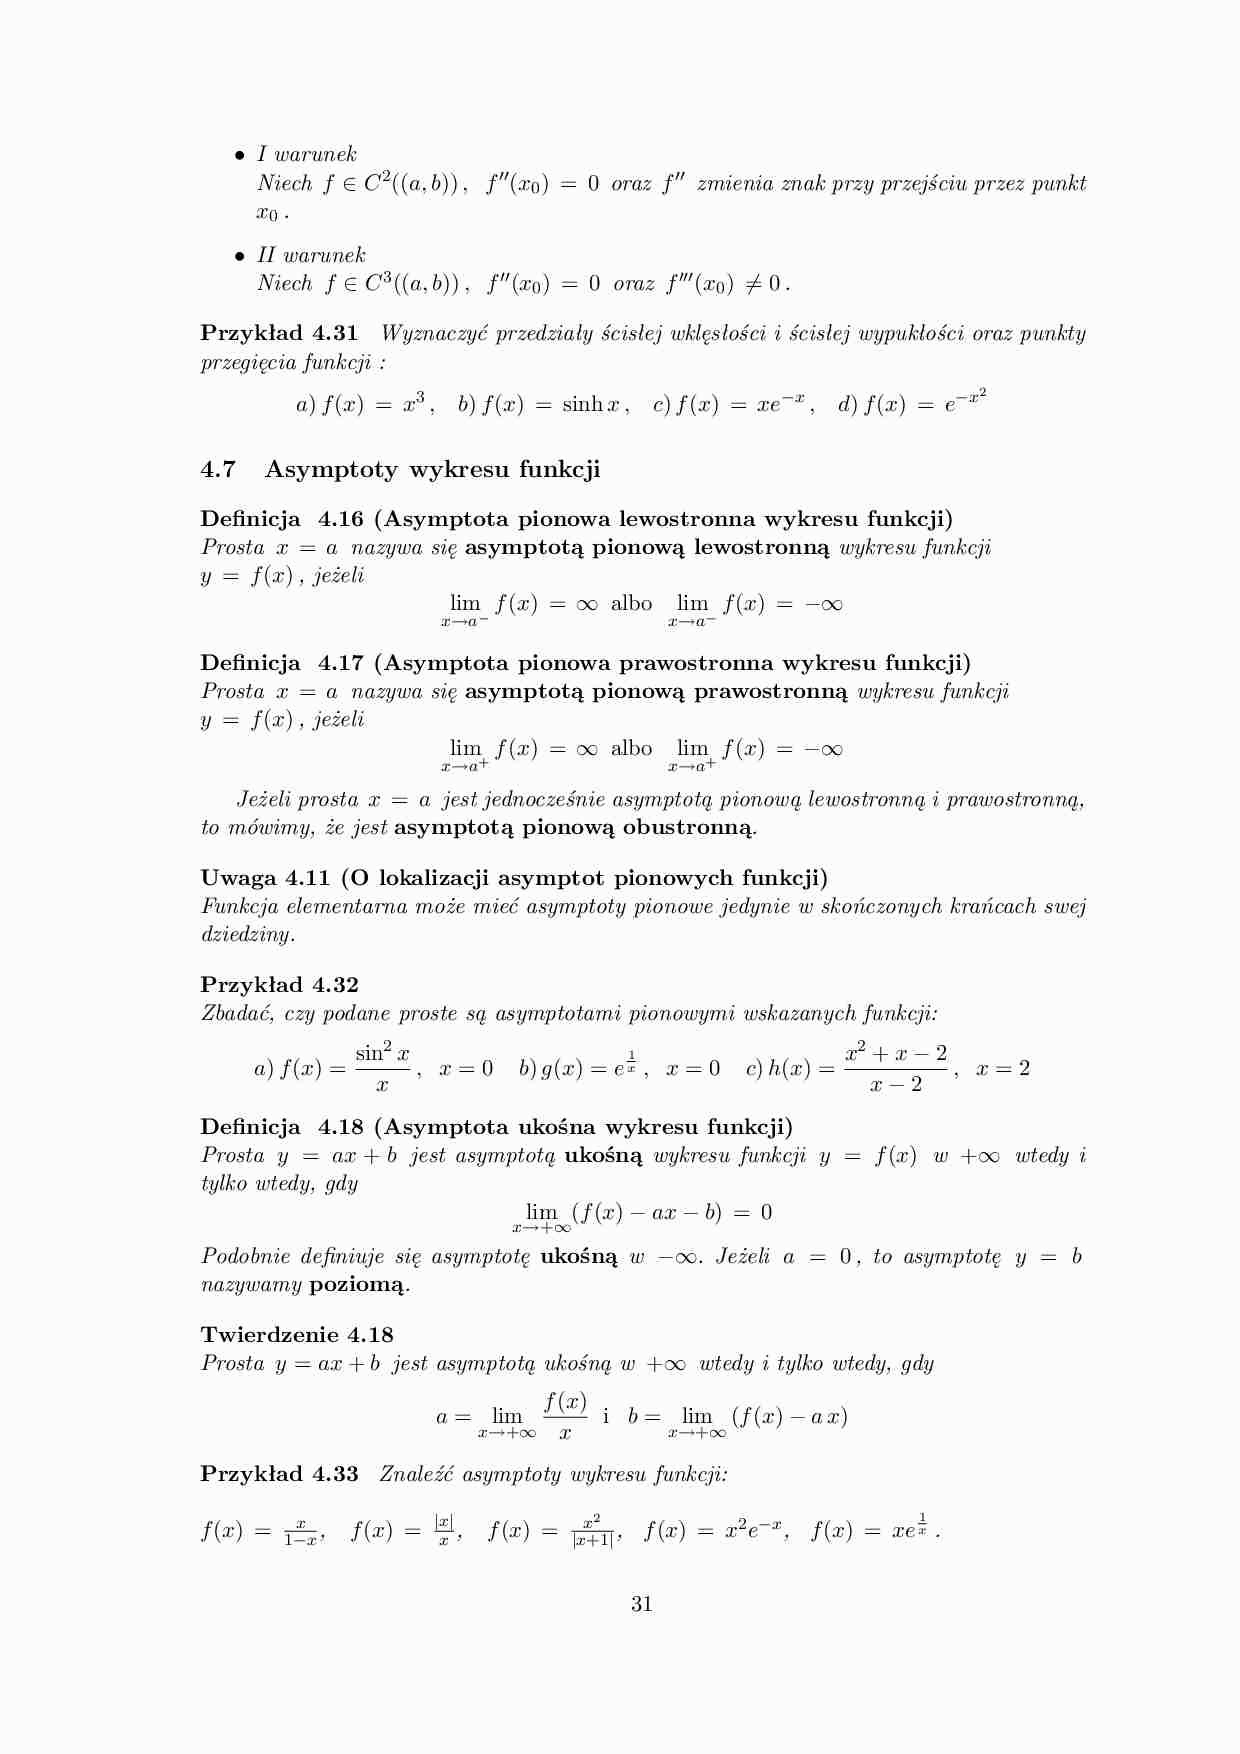 Asymptoty wykresu funkcji - omówienie  - strona 1